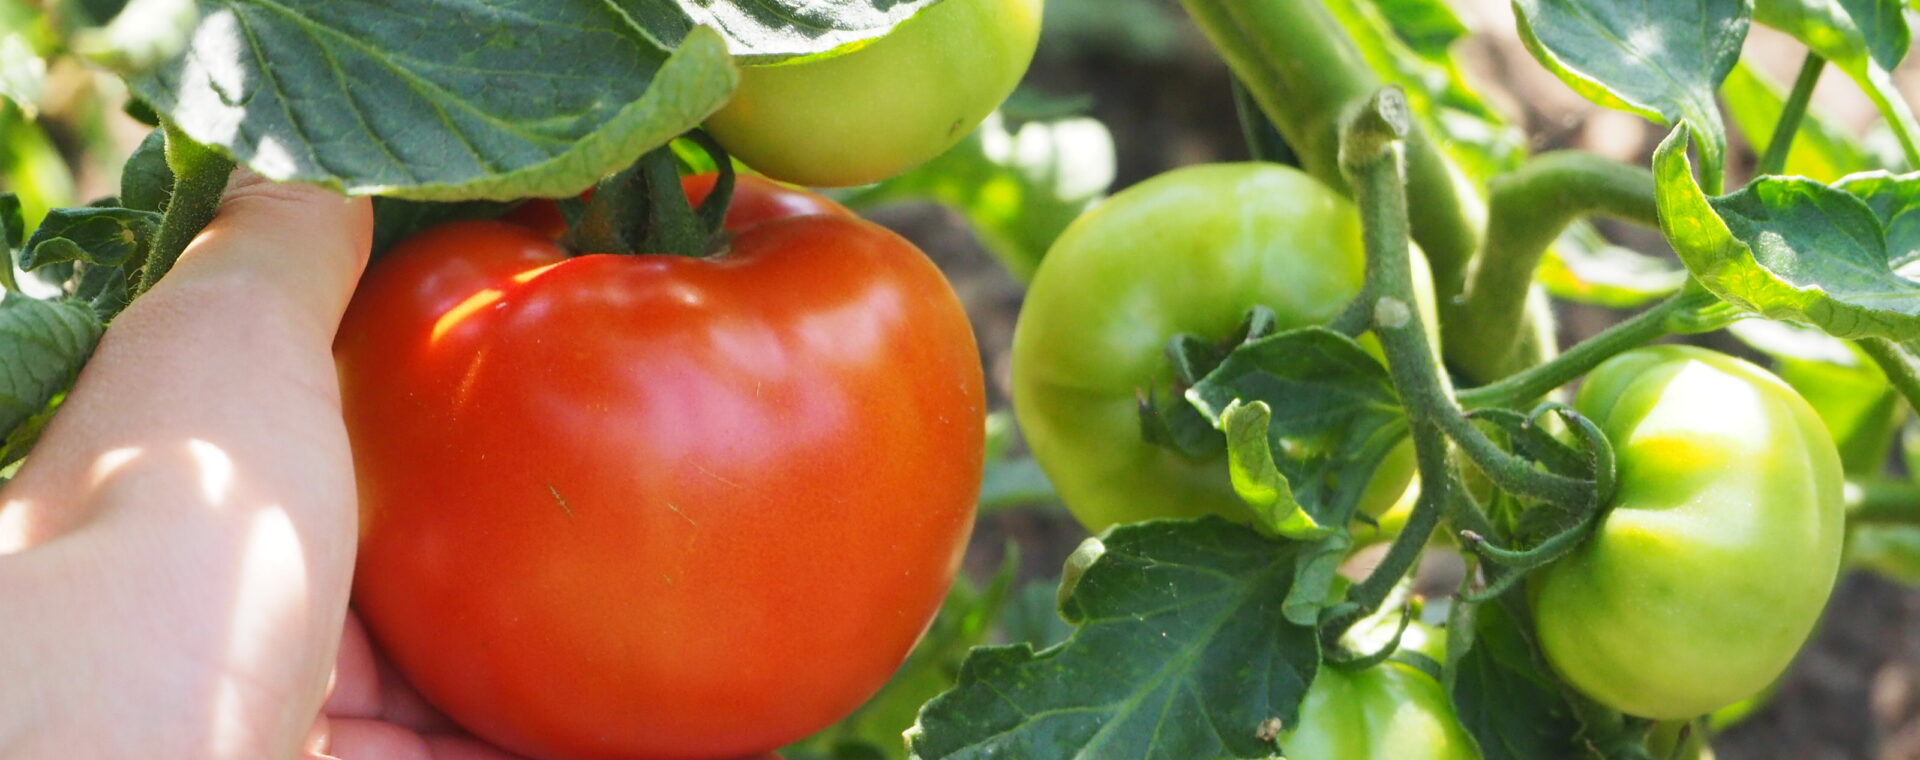 Pěstování rajčat bez chemie